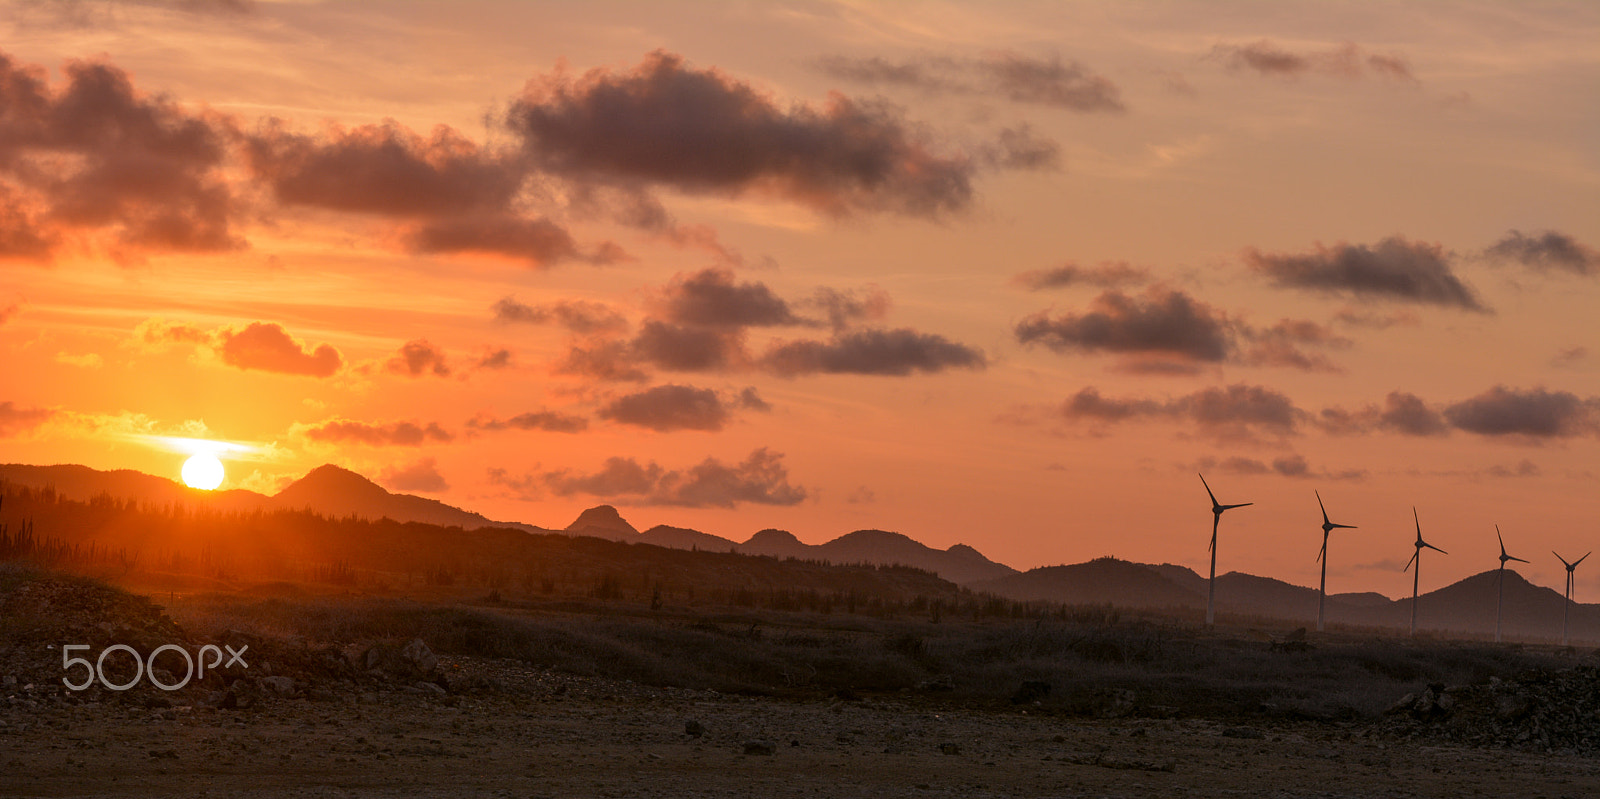 Nikon D7100 + AF Zoom-Nikkor 35-70mm f/2.8D sample photo. Bonaire sunset photography